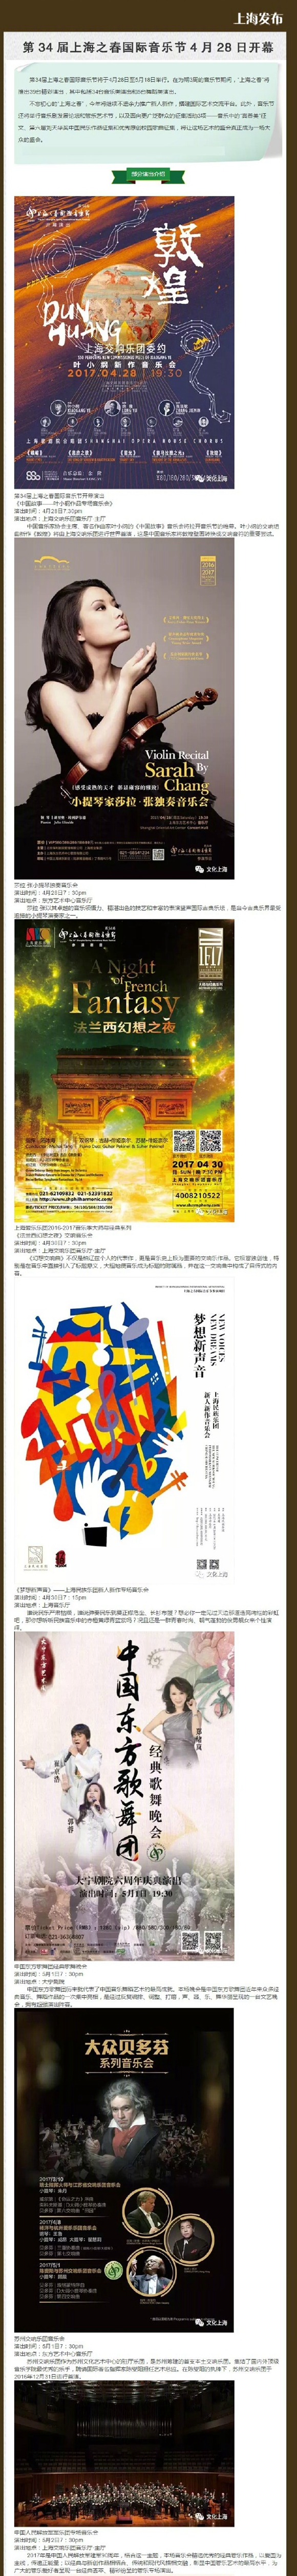 第34届上海之春国际音乐节